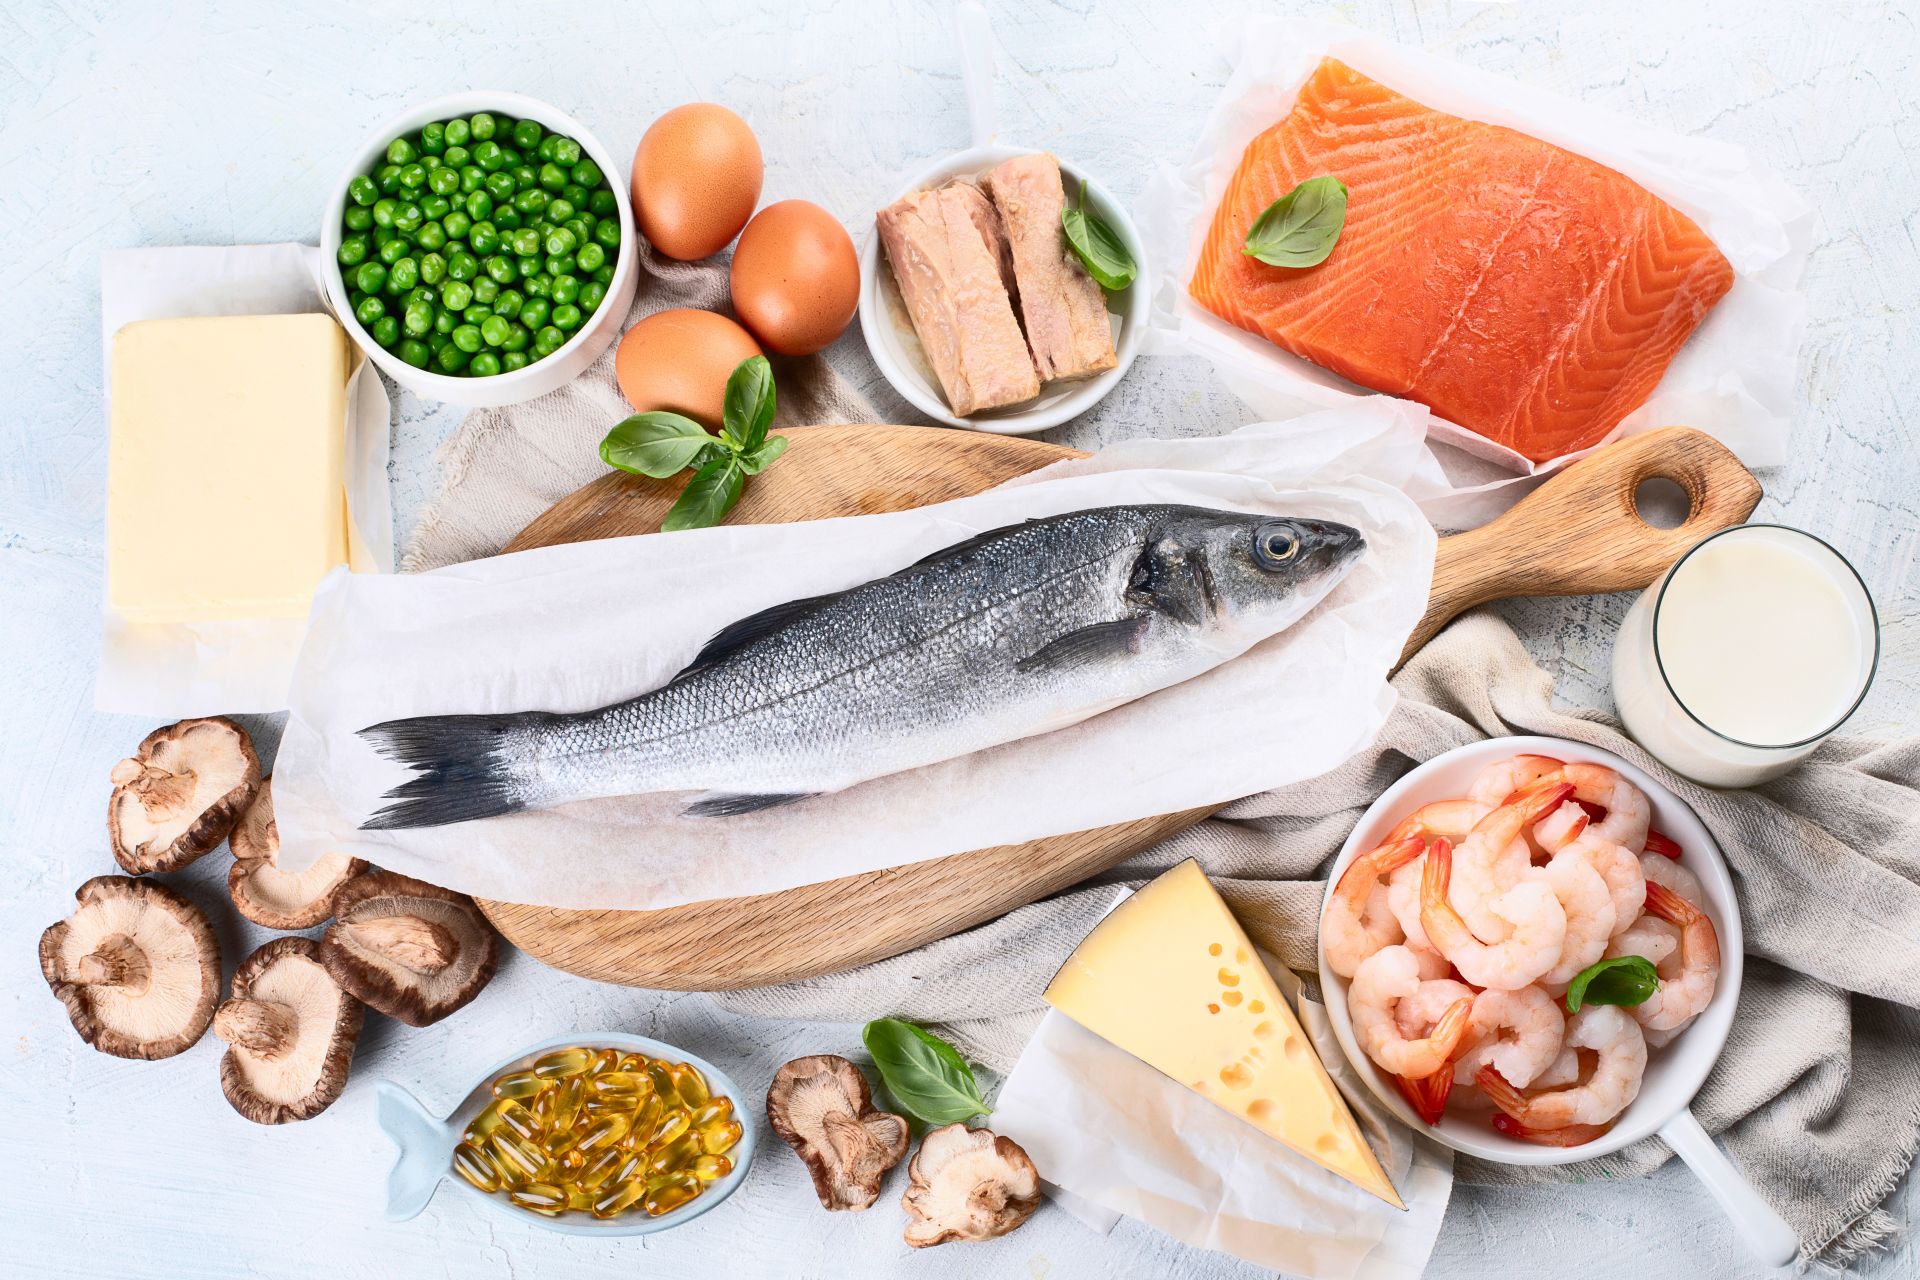 Kwas DHA i kwasy Omega-3 są niezbędne w diecie zimowej - co jeść zimą, aby zapewnić te składniki odżywcze? Wybieraj ryby morskie, algi, orzechy oraz margaryny prozdrowotne, które zostały wzbogacone o wymienione składniki. Sprawdź, jak przygotować posiłki na zimę.